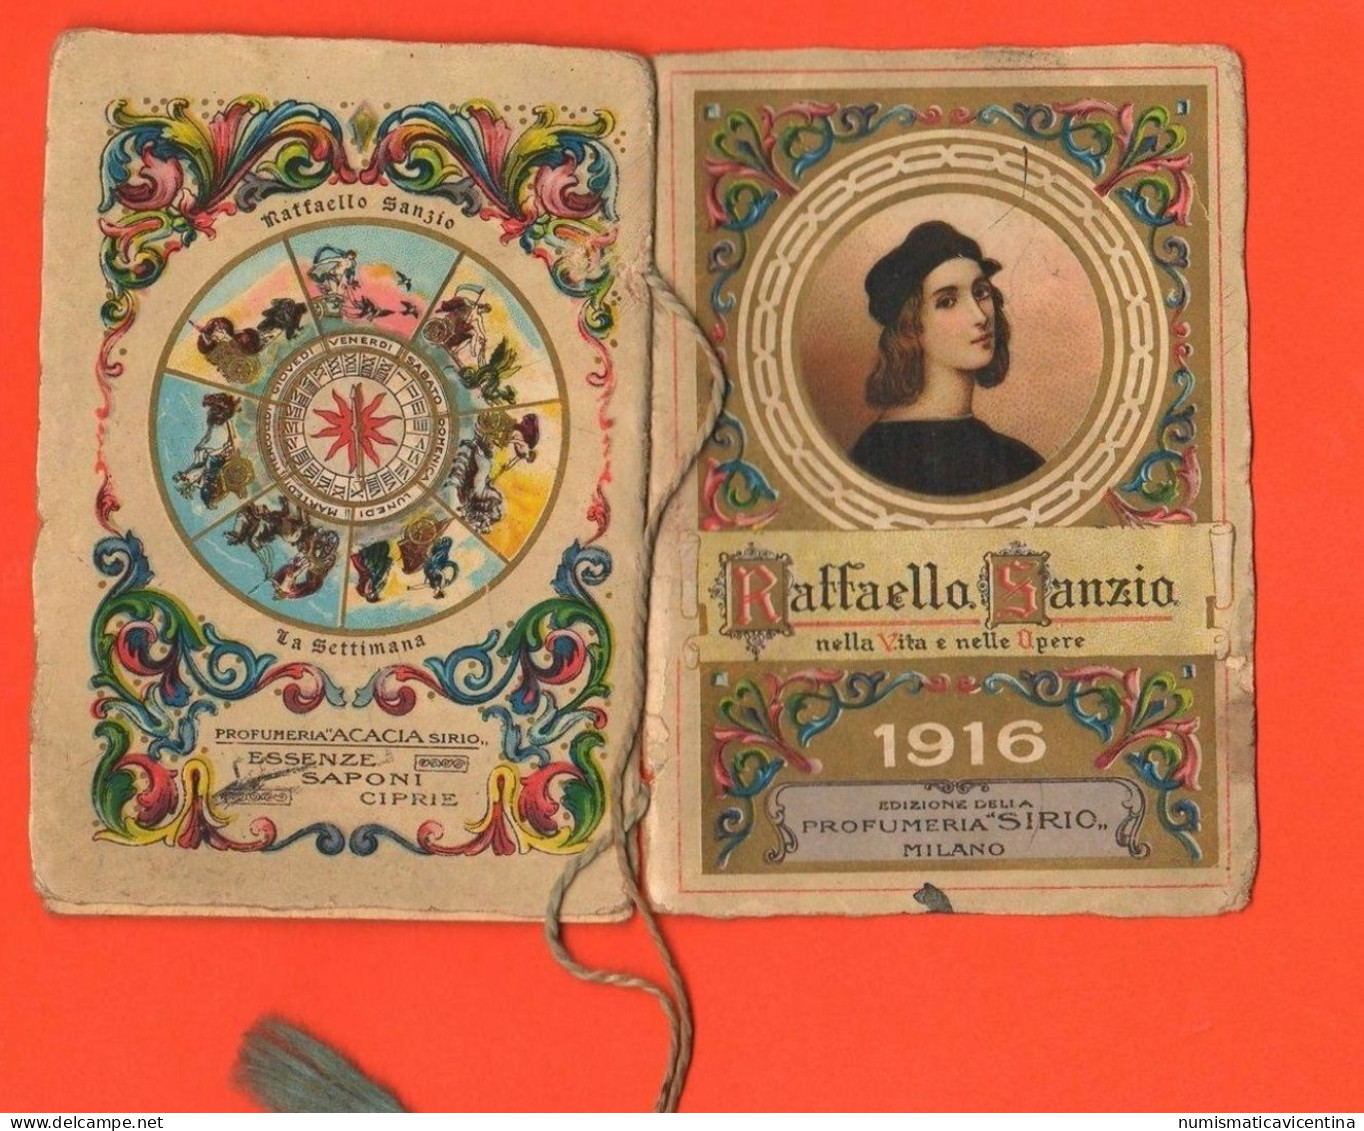 Forlì 1916 Calendario Calendarietto Profumi Saponi Essenze Sirio Milano & F.lli Damerin Raffaello Sanzio Calendar - Formato Piccolo : 1901-20